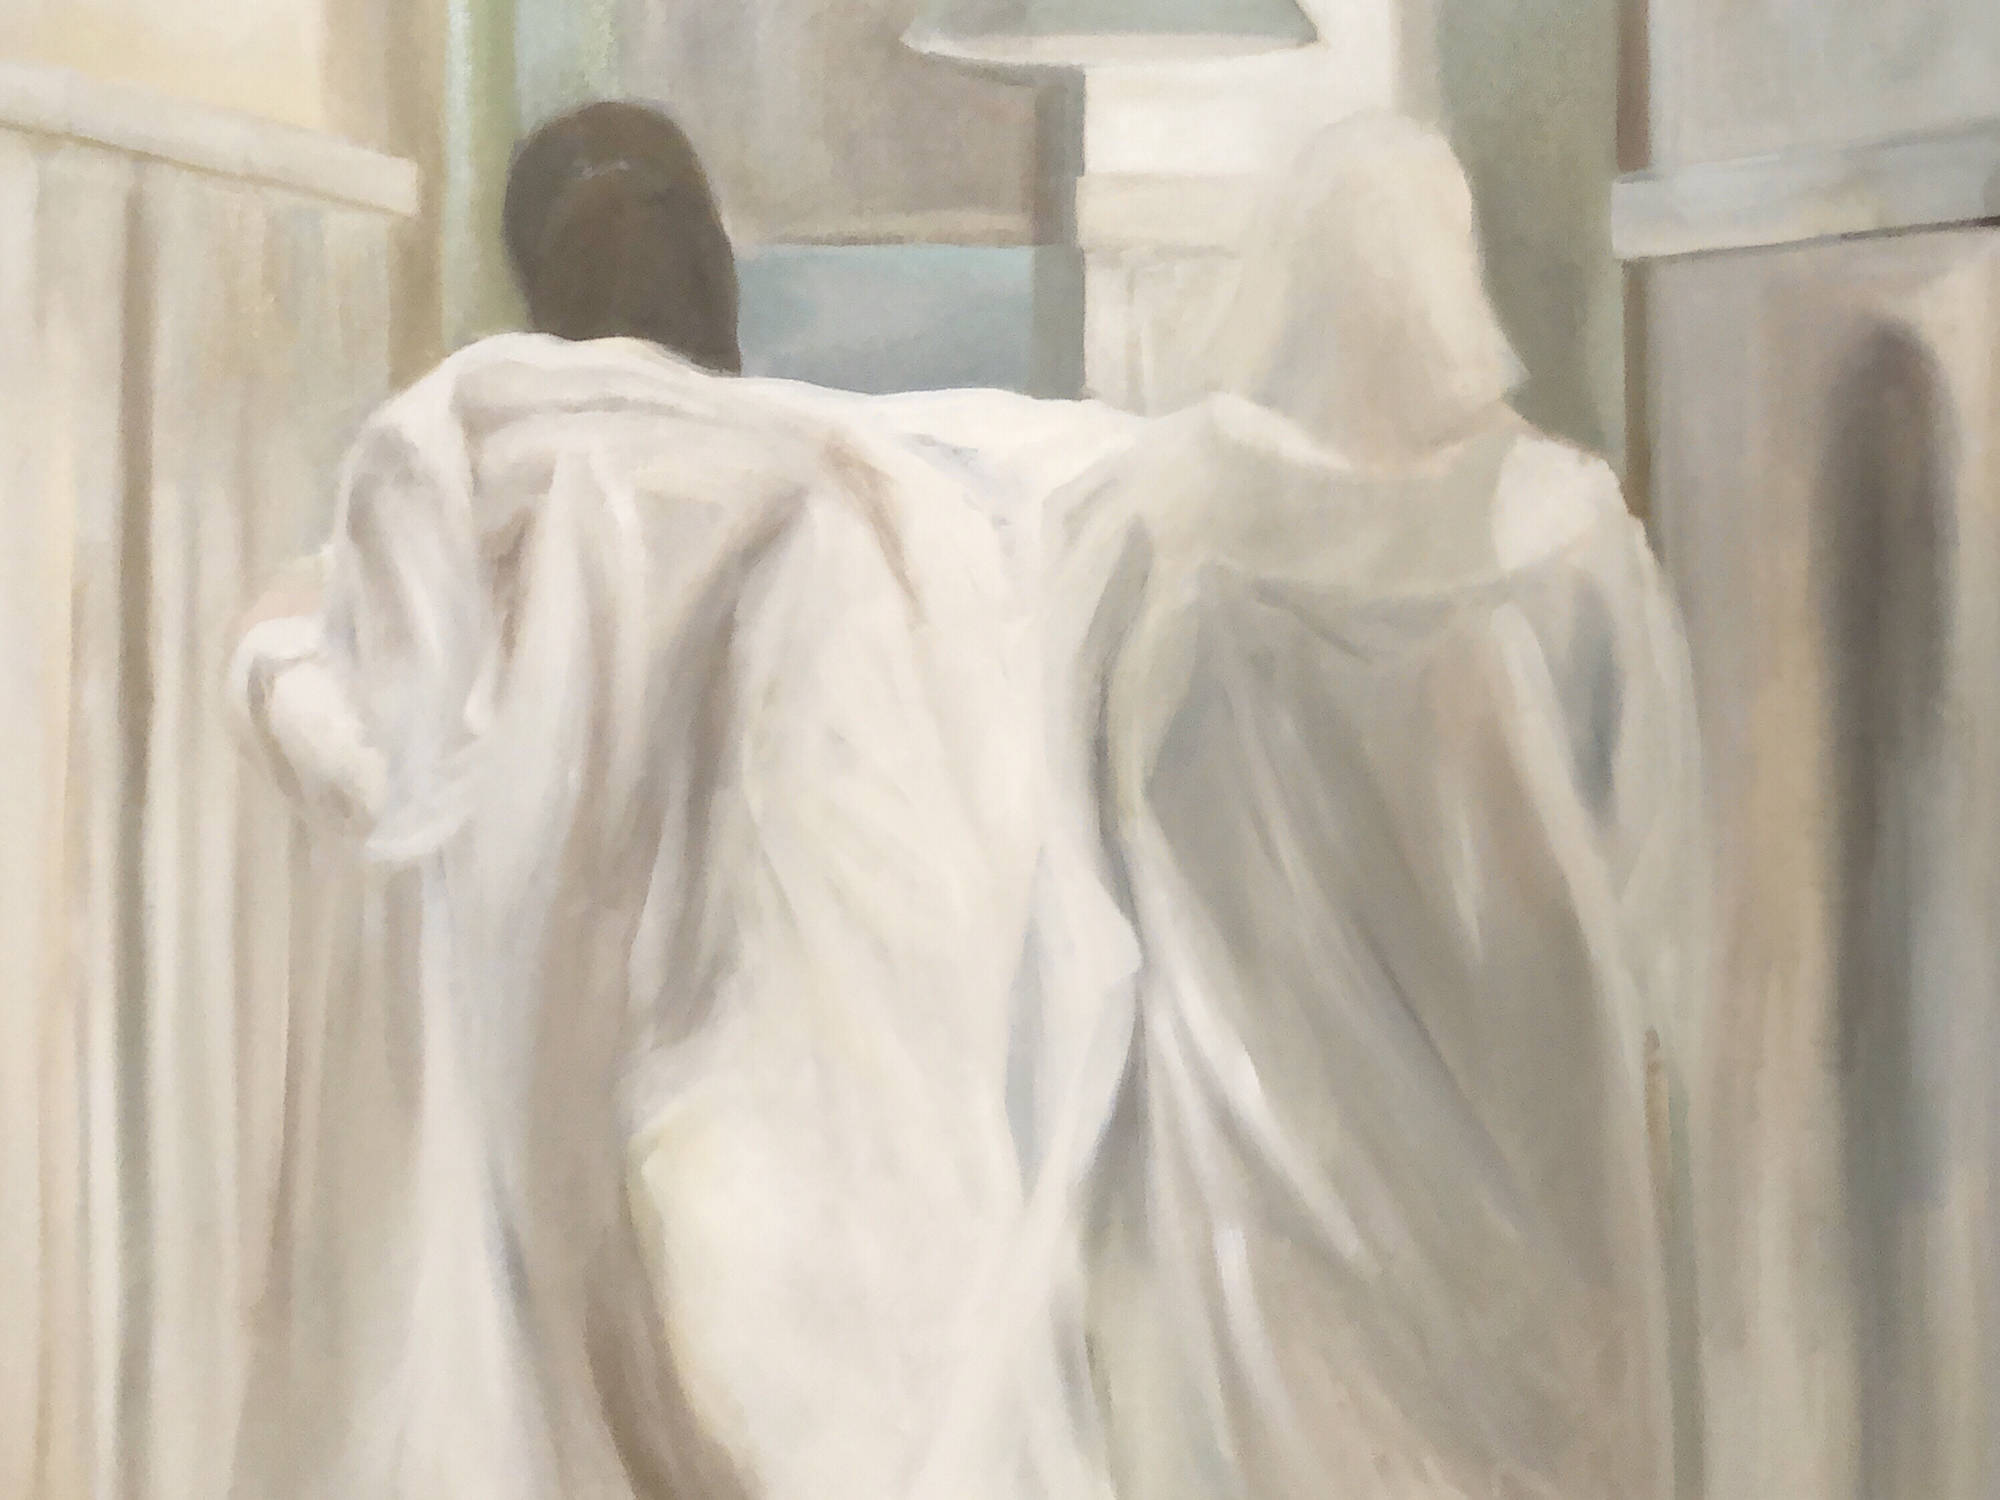 Kata Soós, WORK, 2019, 98x130 cm, oil, canvas.